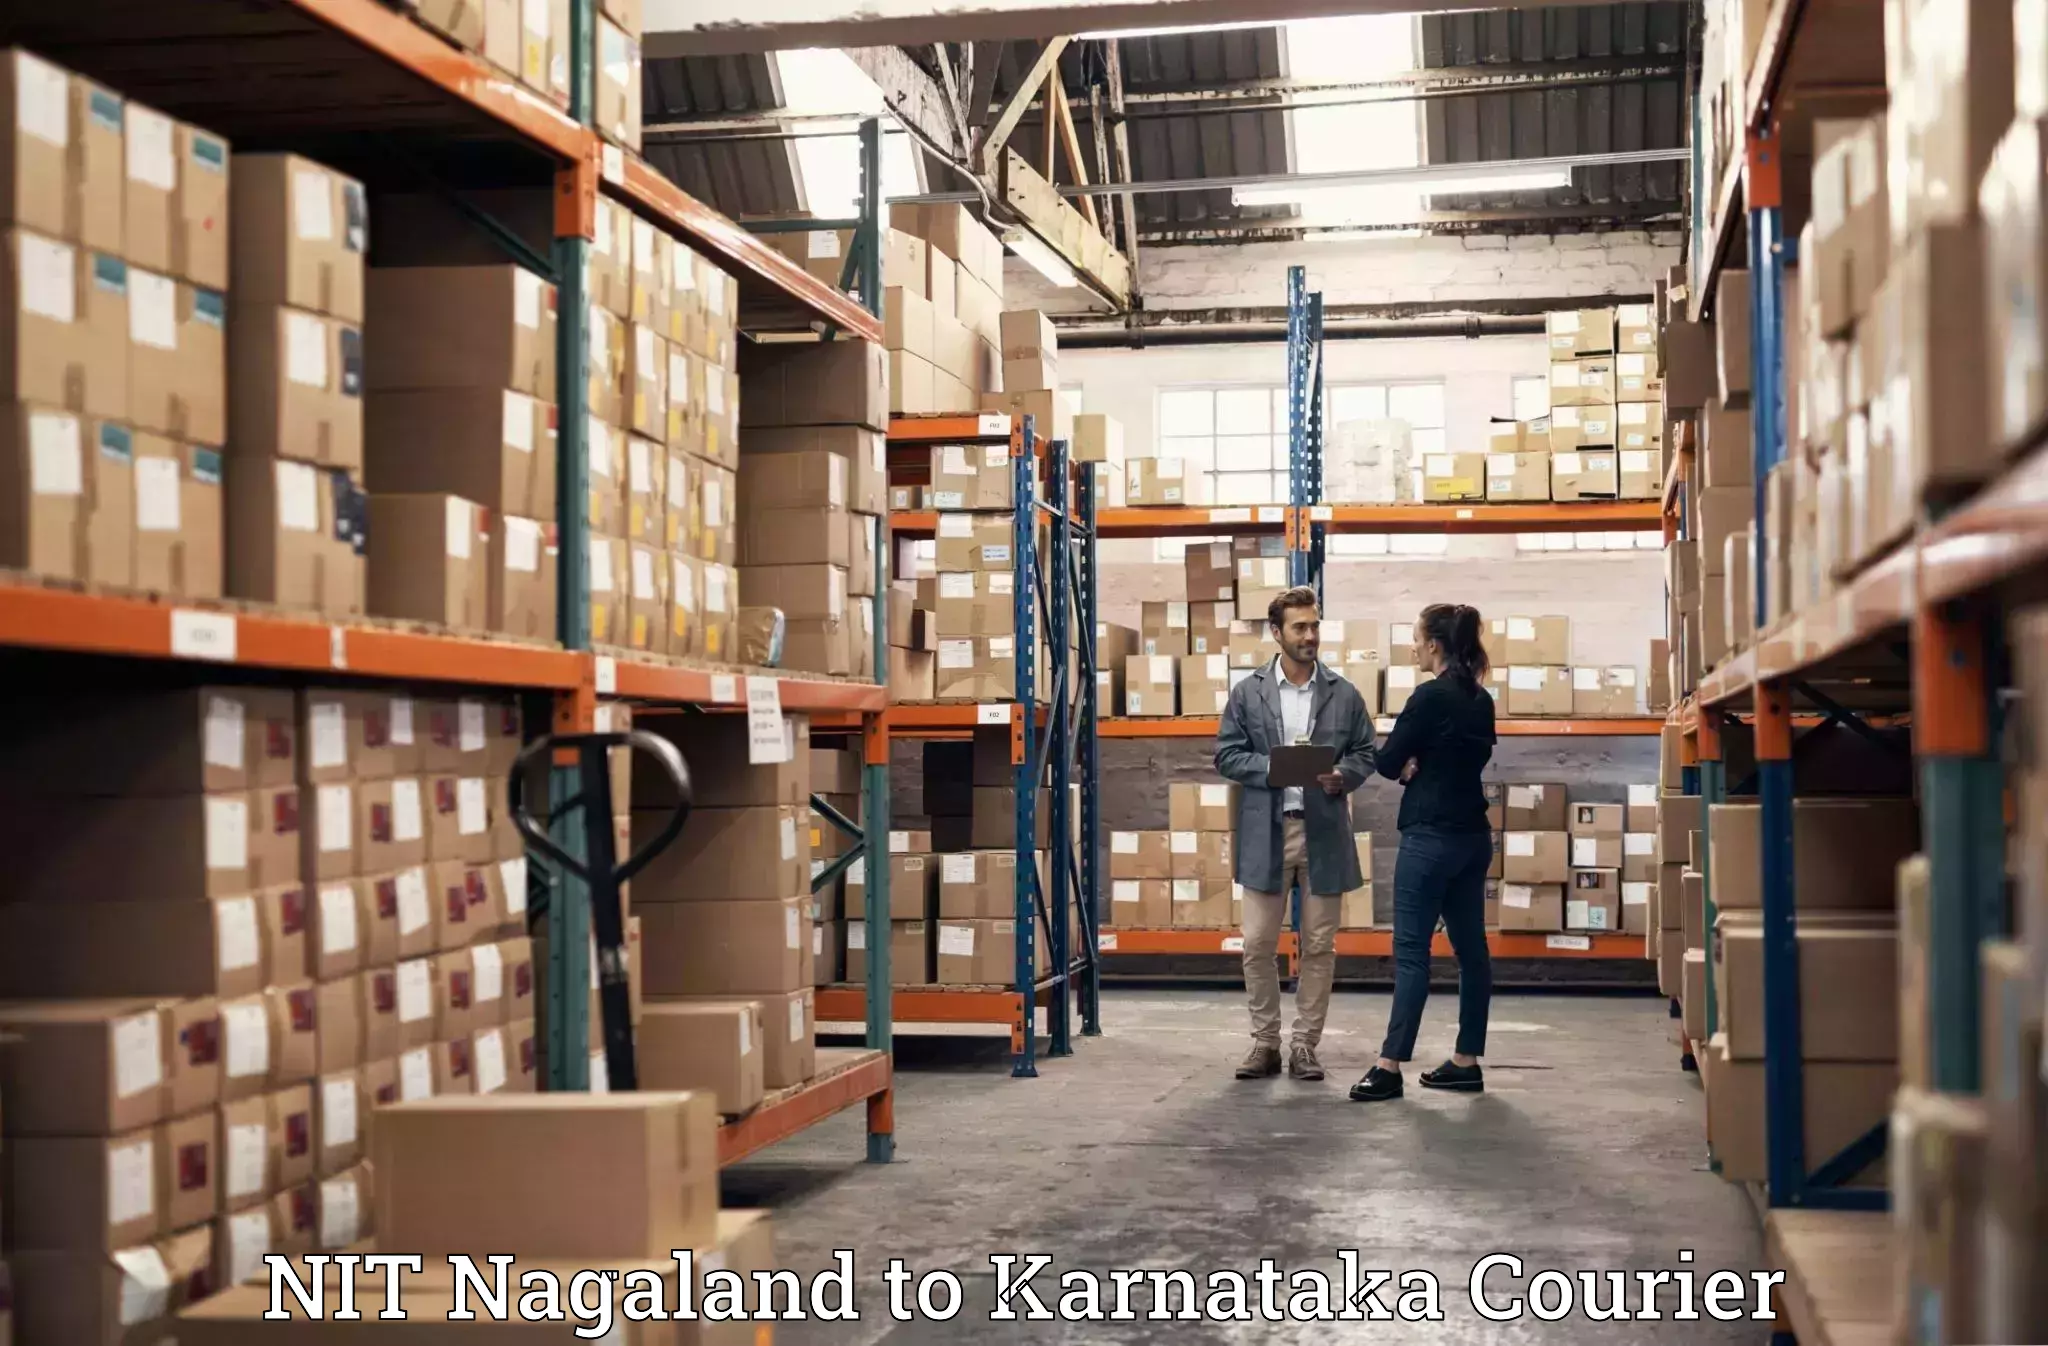 Professional moving company NIT Nagaland to Karnataka